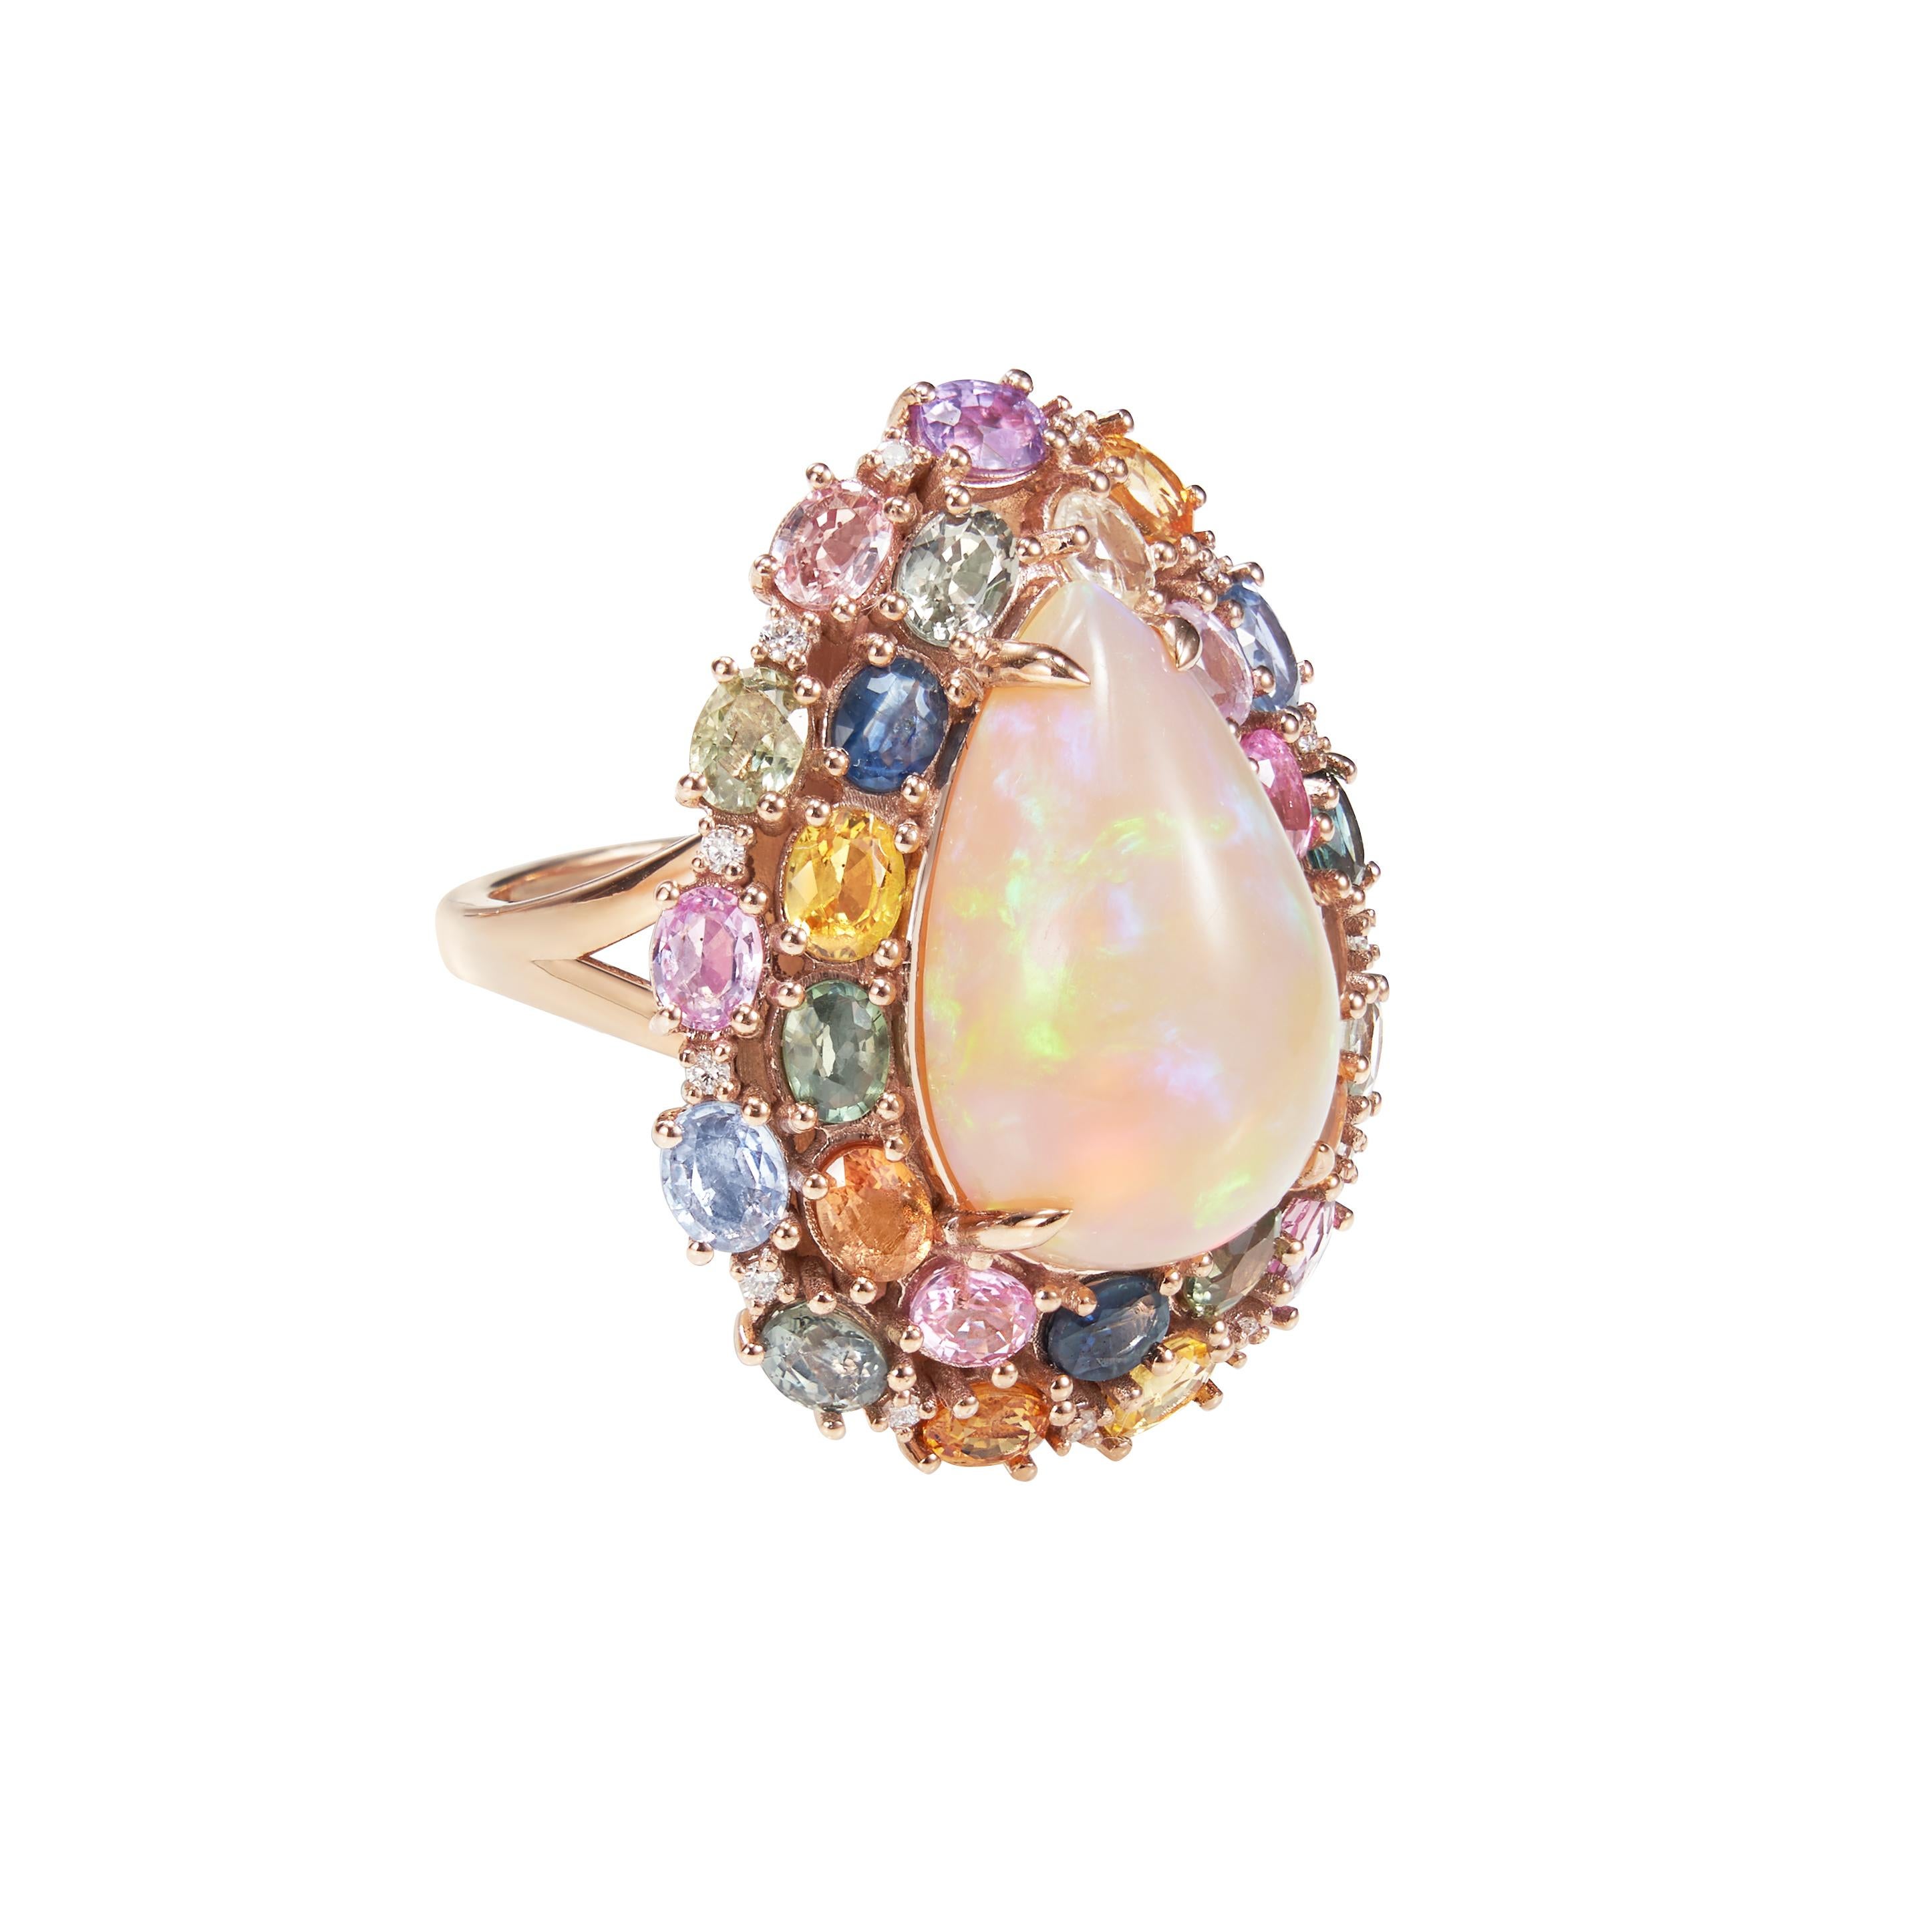 Sunita Nahata präsentiert einen exquisiten Cabochon-Ring aus äthiopischem Opal, der mit Regenbogensaphiren und schillernden Diamanten akzentuiert ist, um das Feuer und das Funkeln dieses farbenfrohen Opals zu betonen. Die prächtigen und farbenfrohen